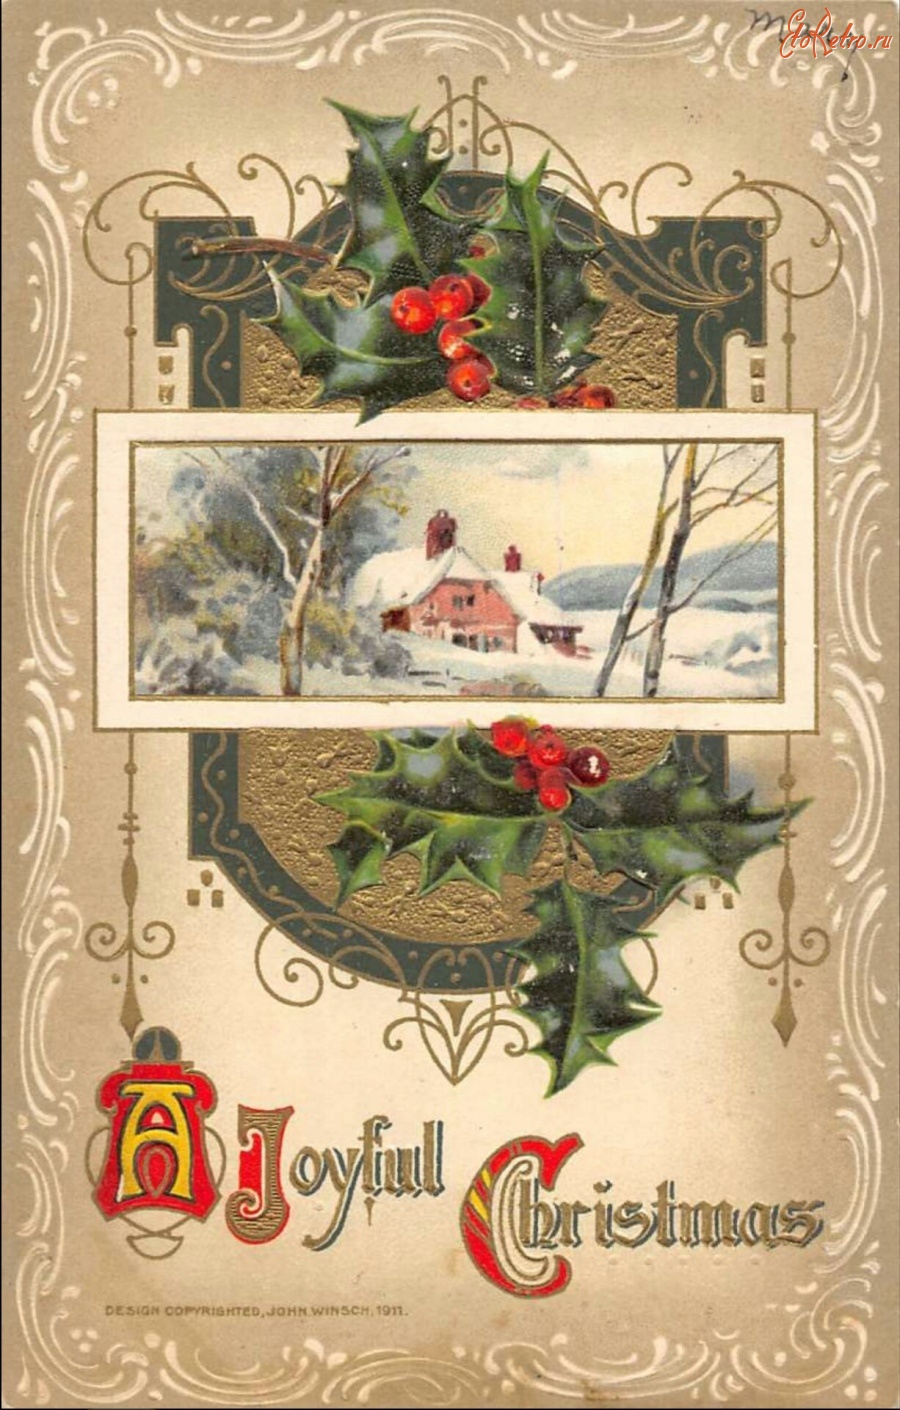 Ретро открытки - Рождественский пейзаж